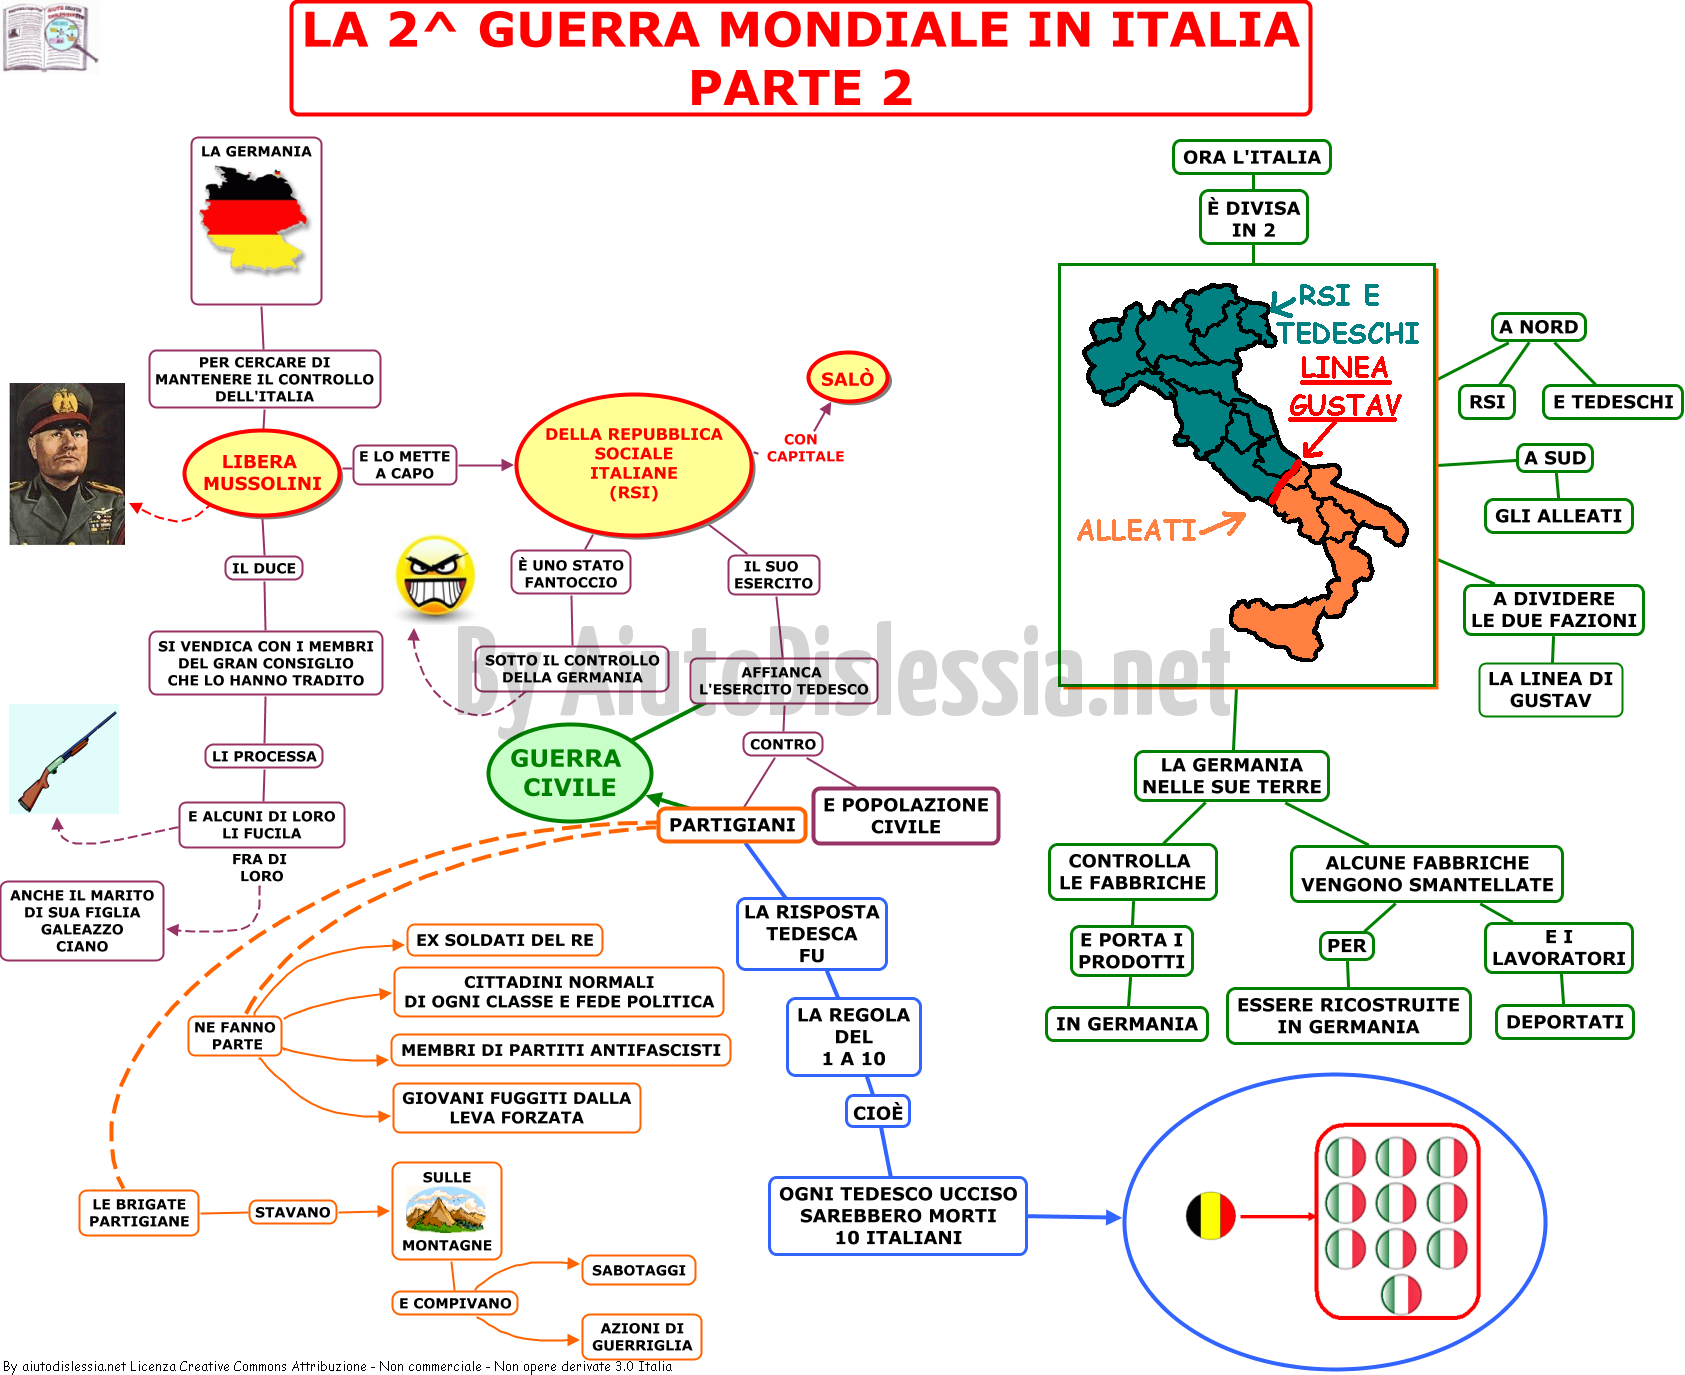 08-la-2-guerra-mondiale-in-italia-parte-2